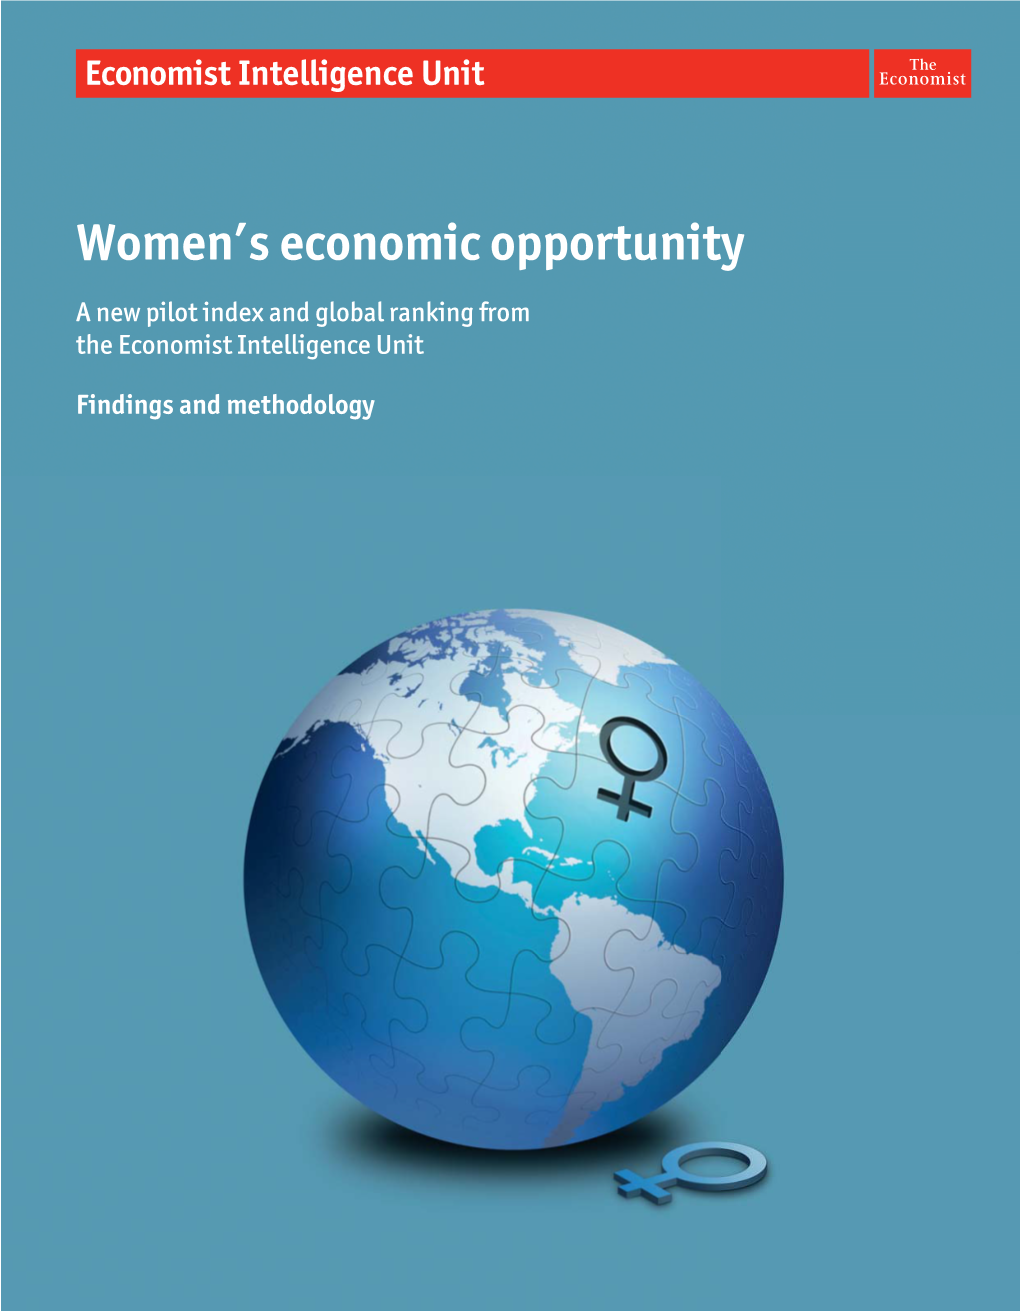 Women's Economic Opportunity Index